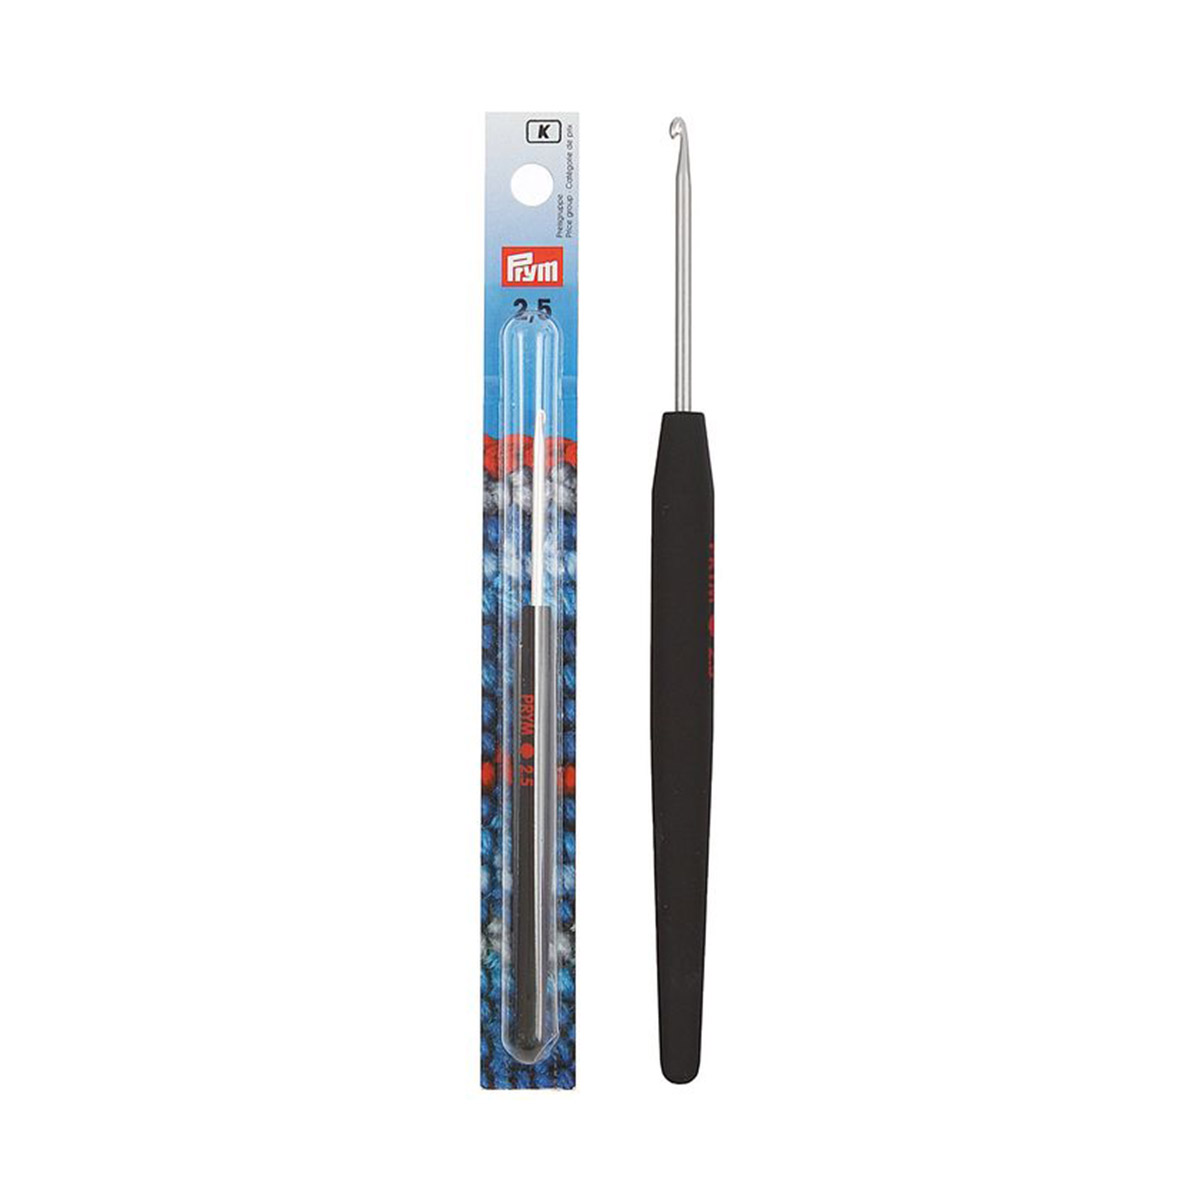 фото Крючок для вязания с цветной ручкой, латунь, 2,5 мм x 14 см, prym195173